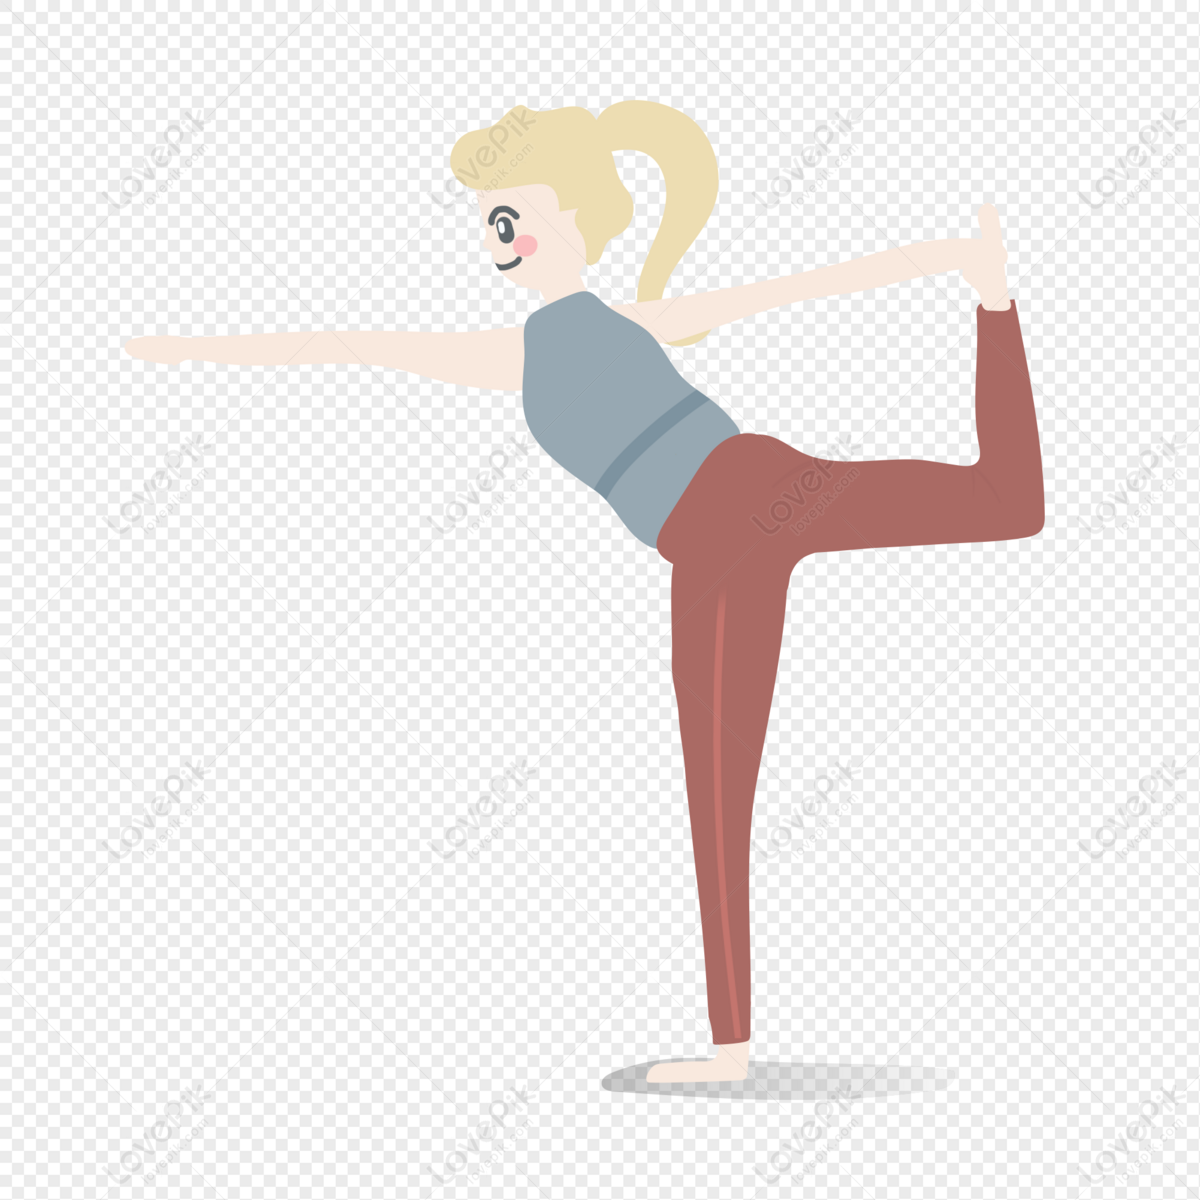 Yoga: Chào mừng bạn đến với thế giới yoga thư giãn và tập trung. Hãy cùng tìm hiểu những động tác yoga đầy quyến rũ và tận hưởng cảm giác thư giãn đến từng tế bào trong cơ thể. Nhấp vào ảnh bên dưới để khám phá ngay nhé!